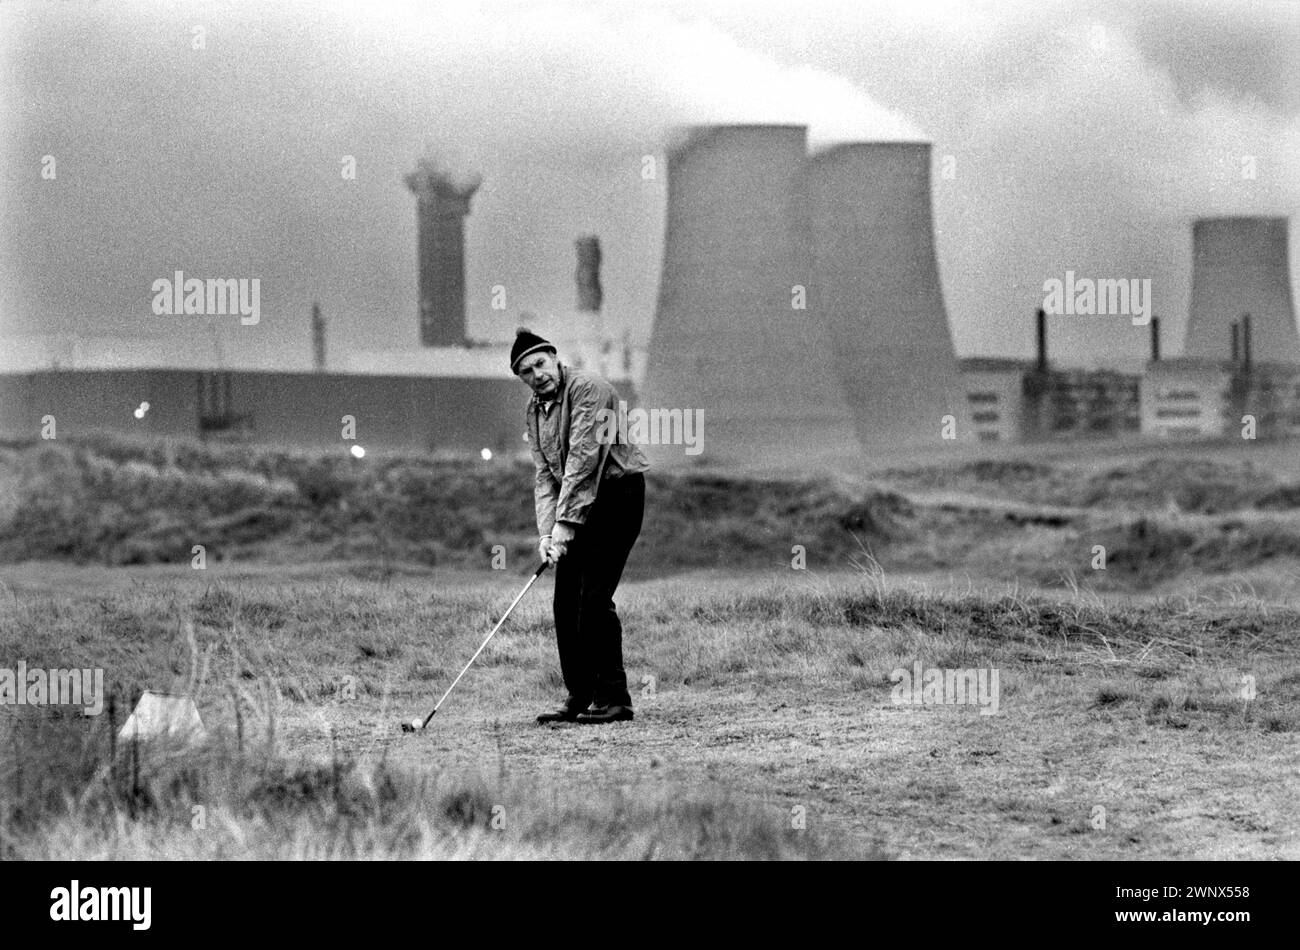 Kernkraftwerk Großbritannien. Windscale und Calder Nuclear Processing Plant. British Nuclear Fuels. Die Windscale Pfähle (einer auf diesem Foto) waren zwei luftgekühlte Graphitreaktoren auf dem Windscale-Kernkraftwerk in Cumberland (heute bekannt als Sellafield-Standort, Cumbria), Ein einheimischer Mann, der auf dem sogenannten toxischen Golfplatz spielte. Windscale, Cumbria, England 1983. HOMER SYKES AUS DEN 1980ER JAHREN Stockfoto